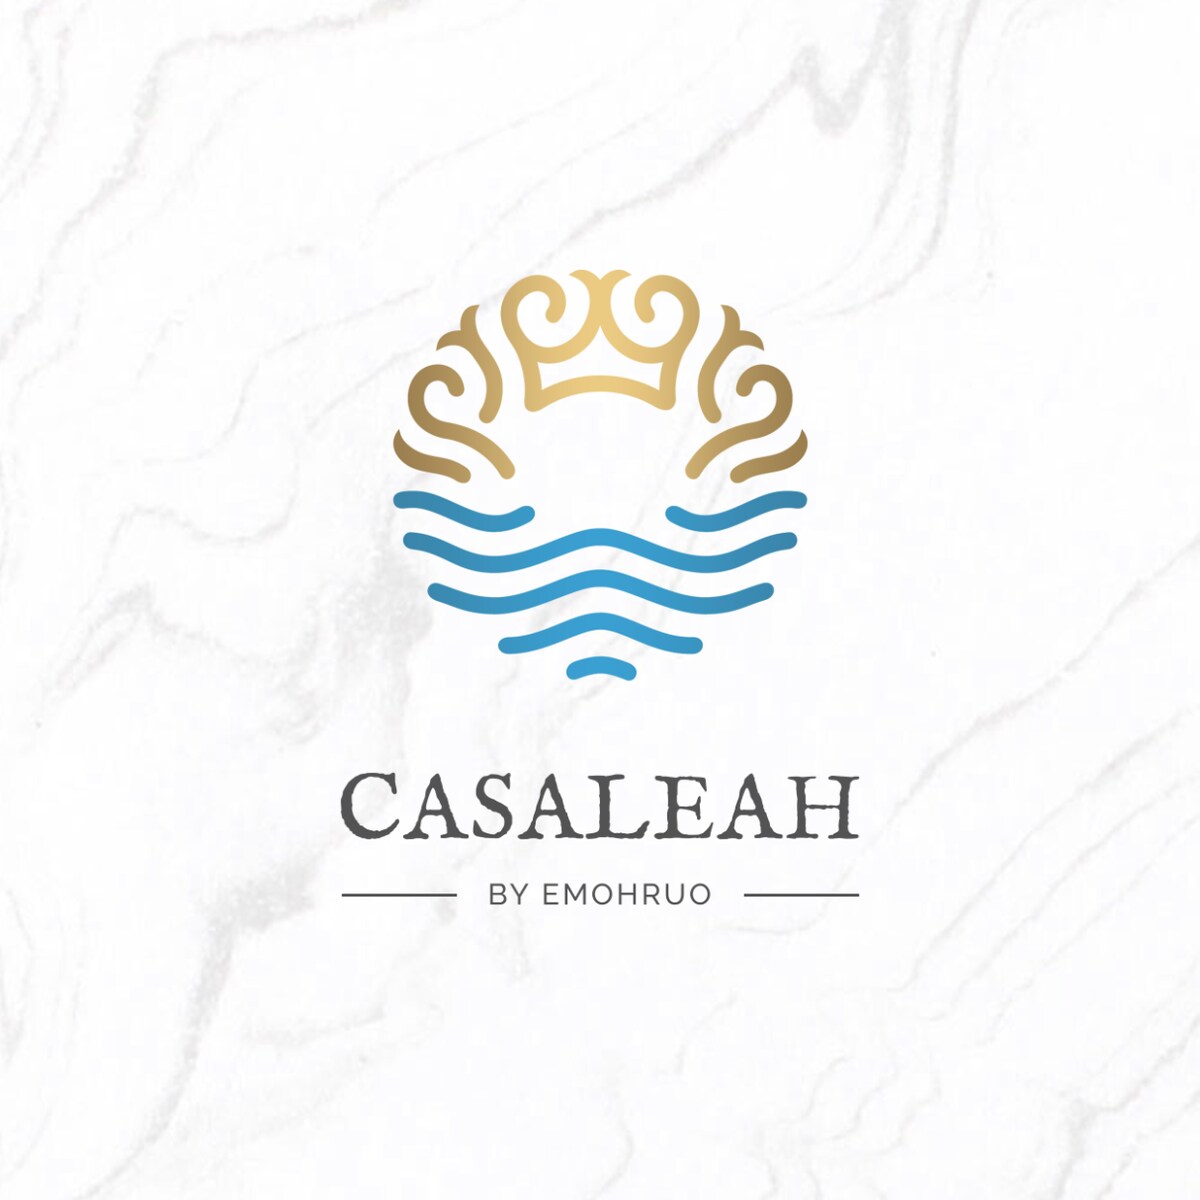 Casaleah